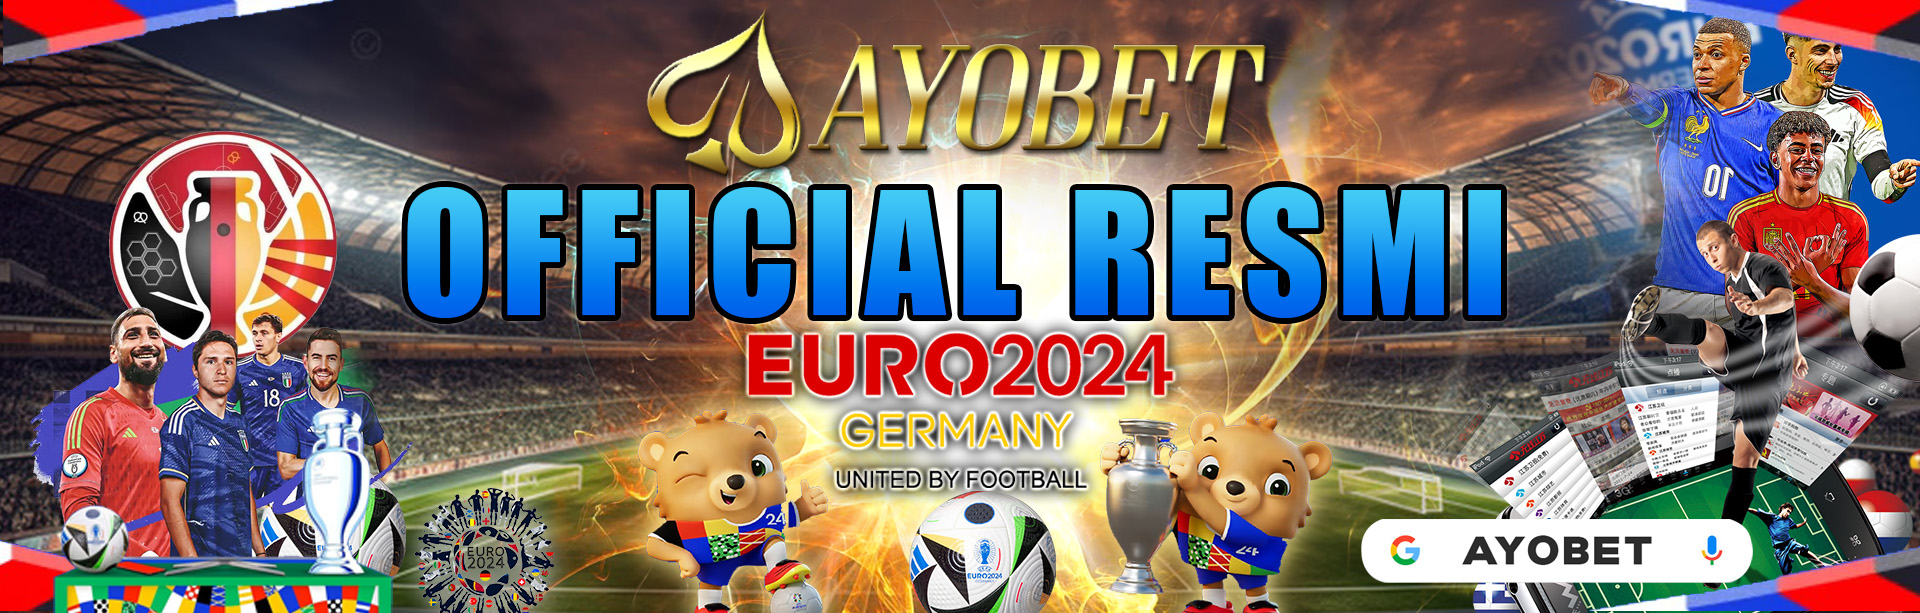 AYOBET: OFFICIAL EURO 2024